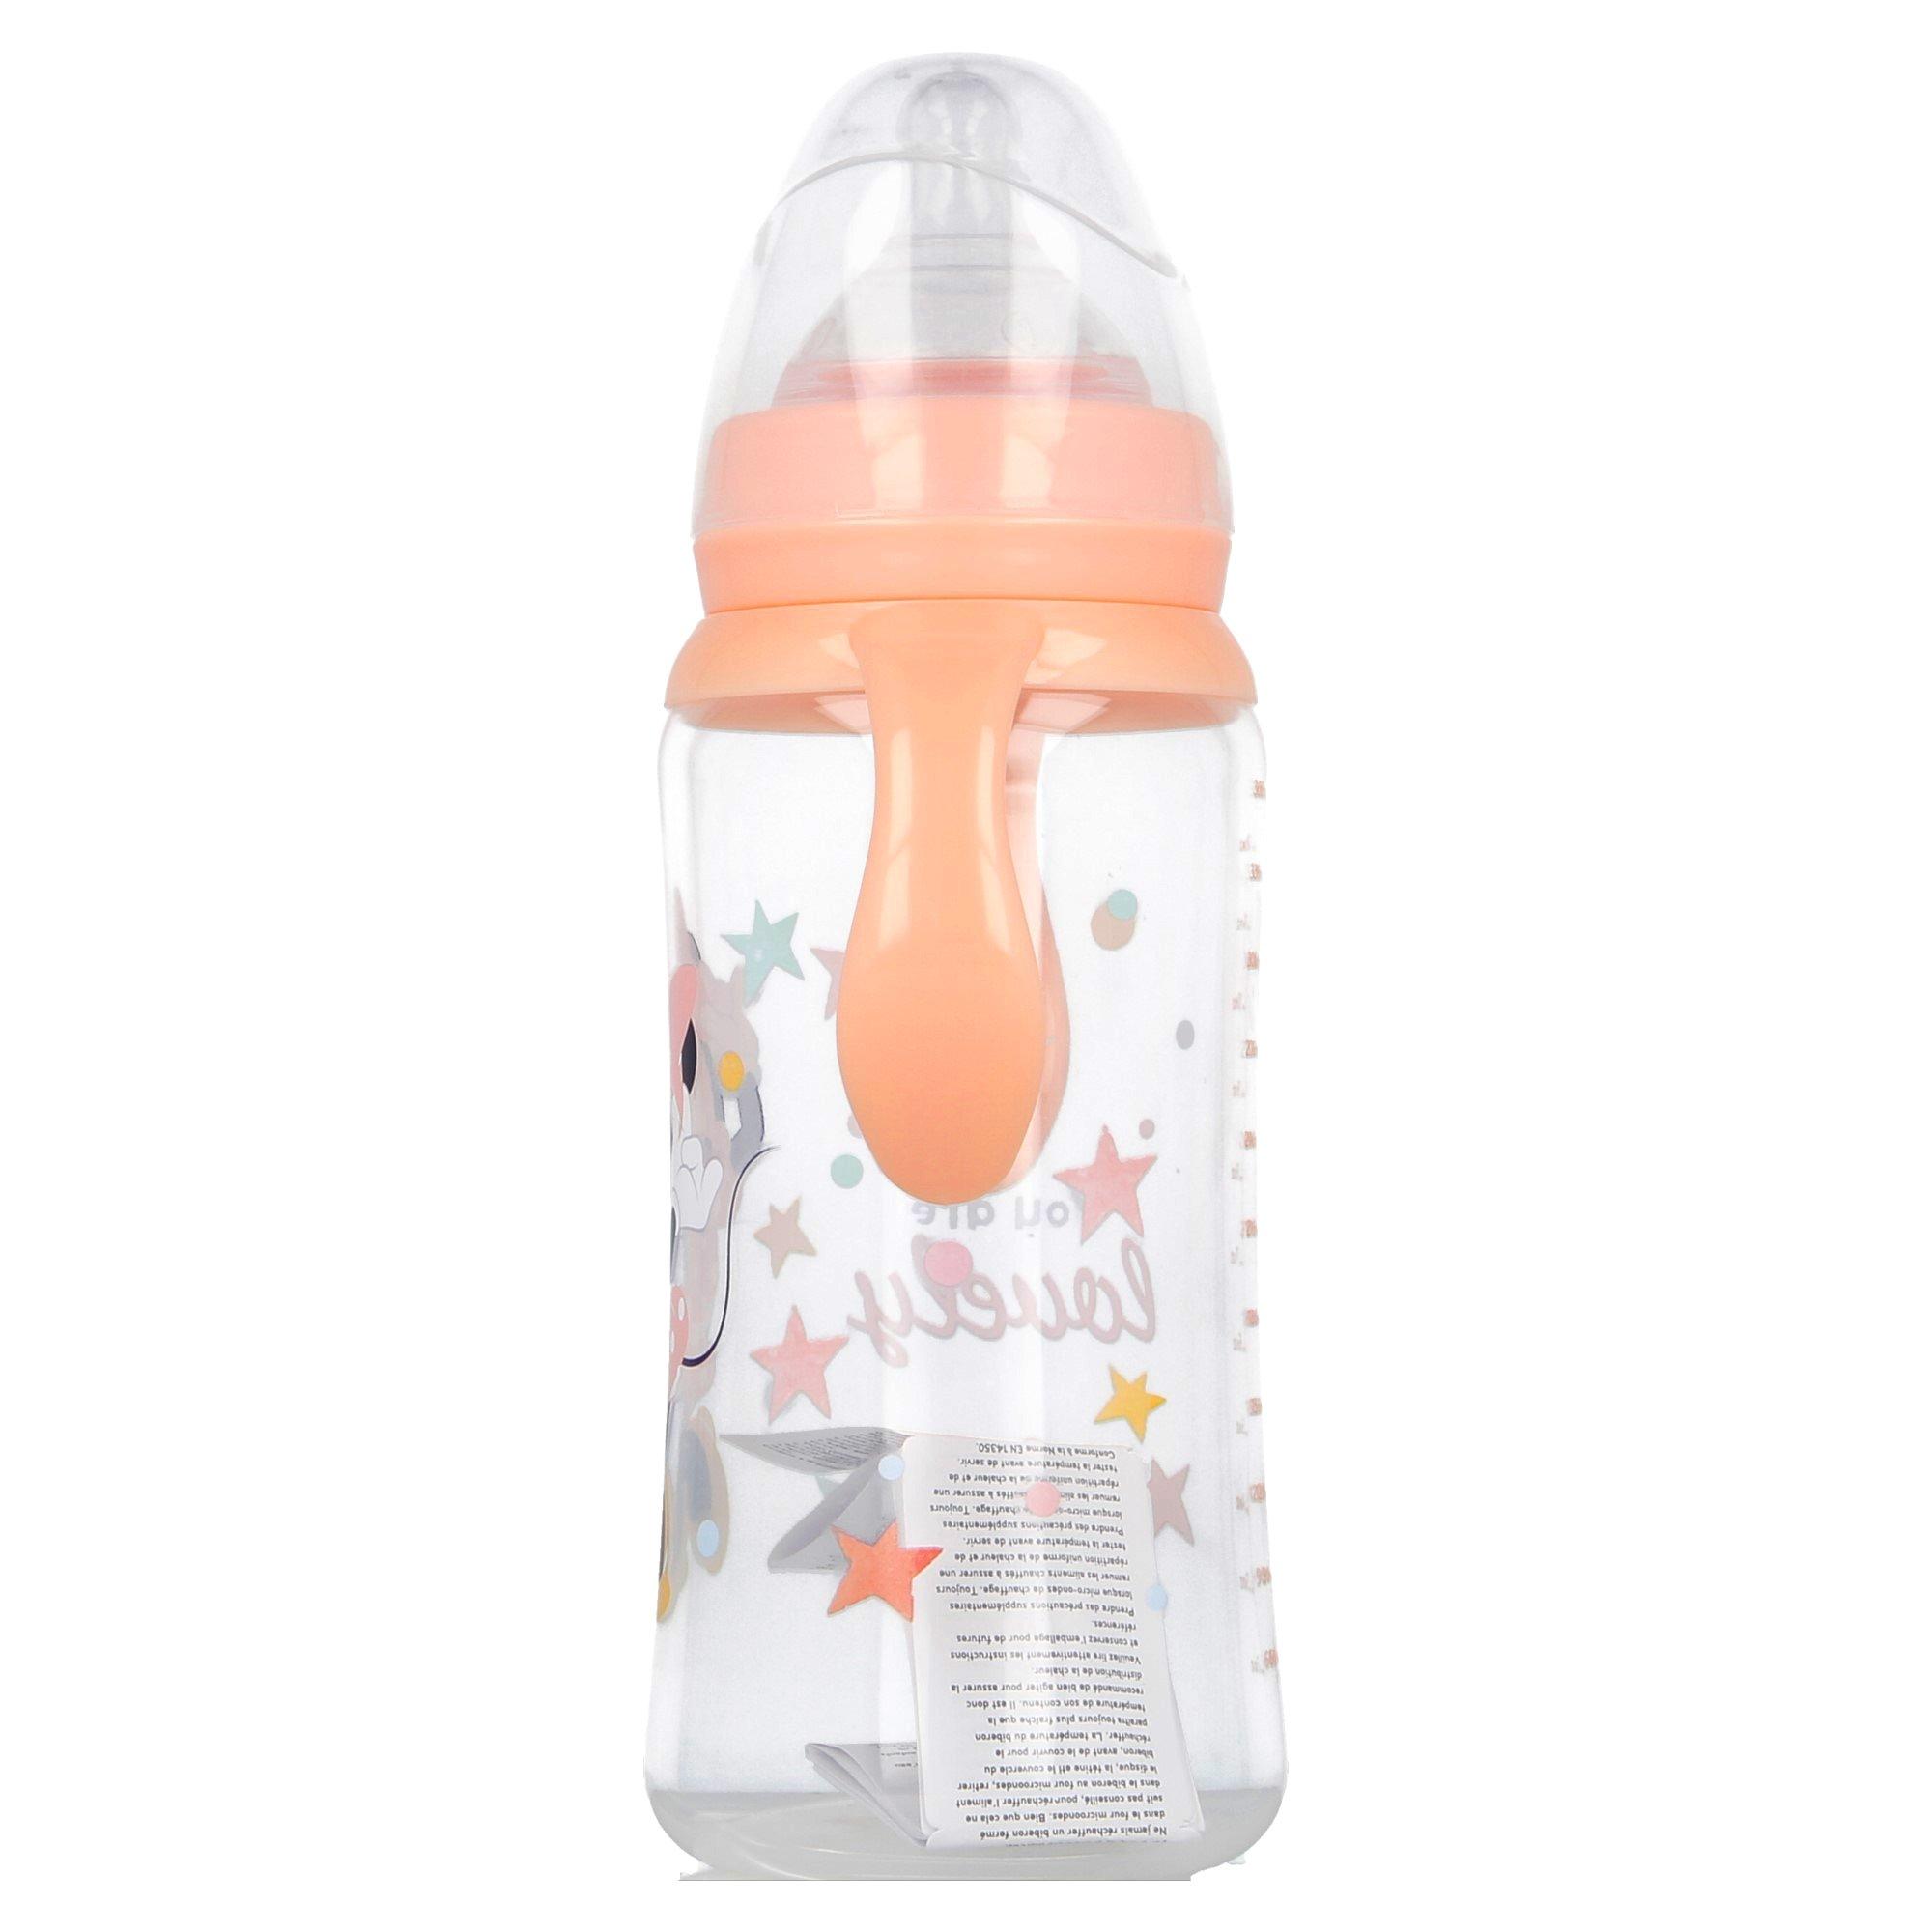 Stor  Babyflasche 360 ml mit Griff - Minnie Mouse 